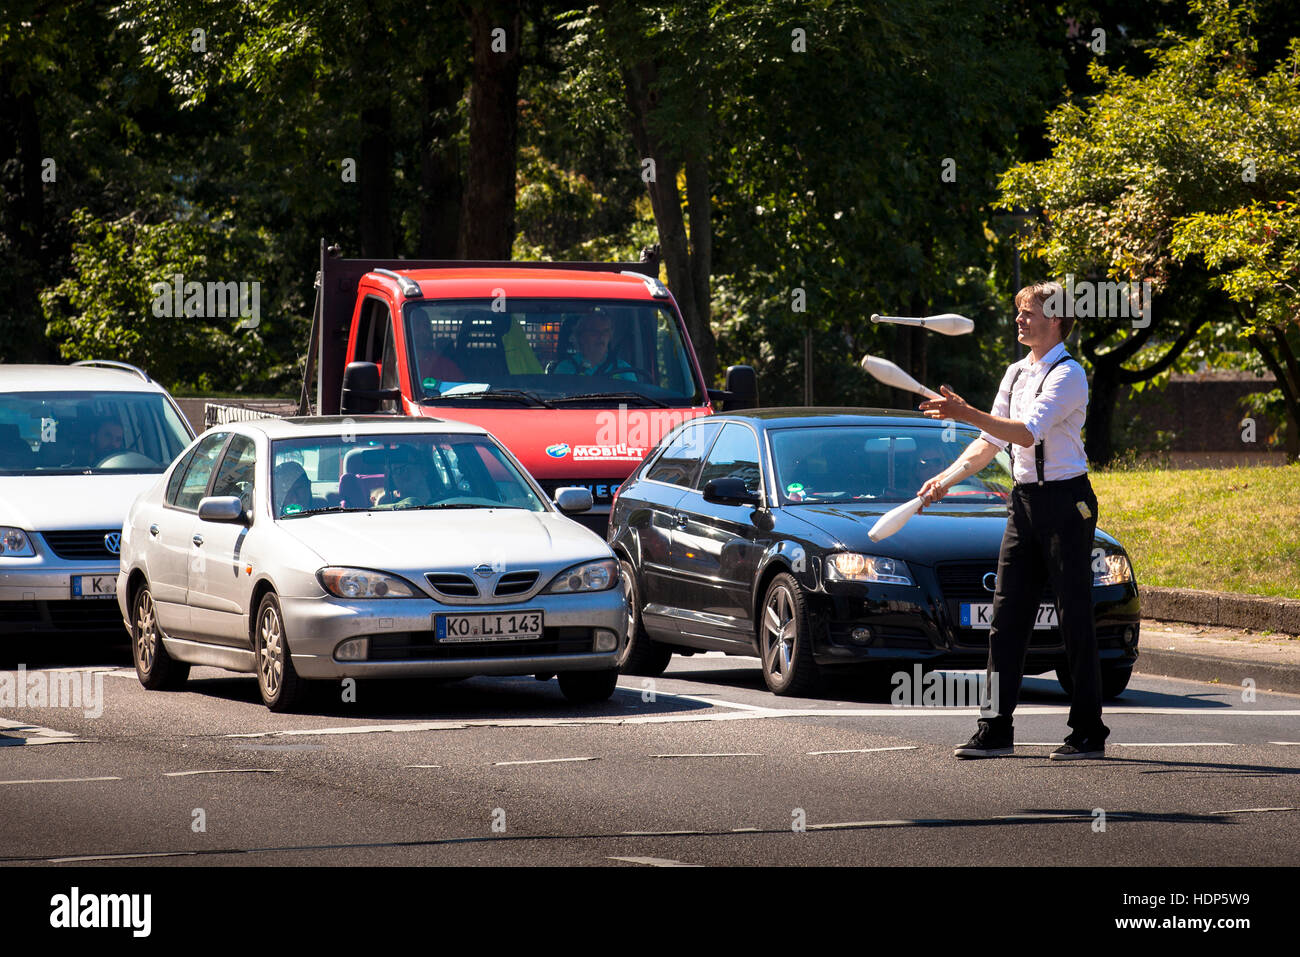 Germania, Colonia, giocoliere davanti a vetture, in attesa al semaforo dopo la prestazione che egli chiede il driver per una donazione. Foto Stock